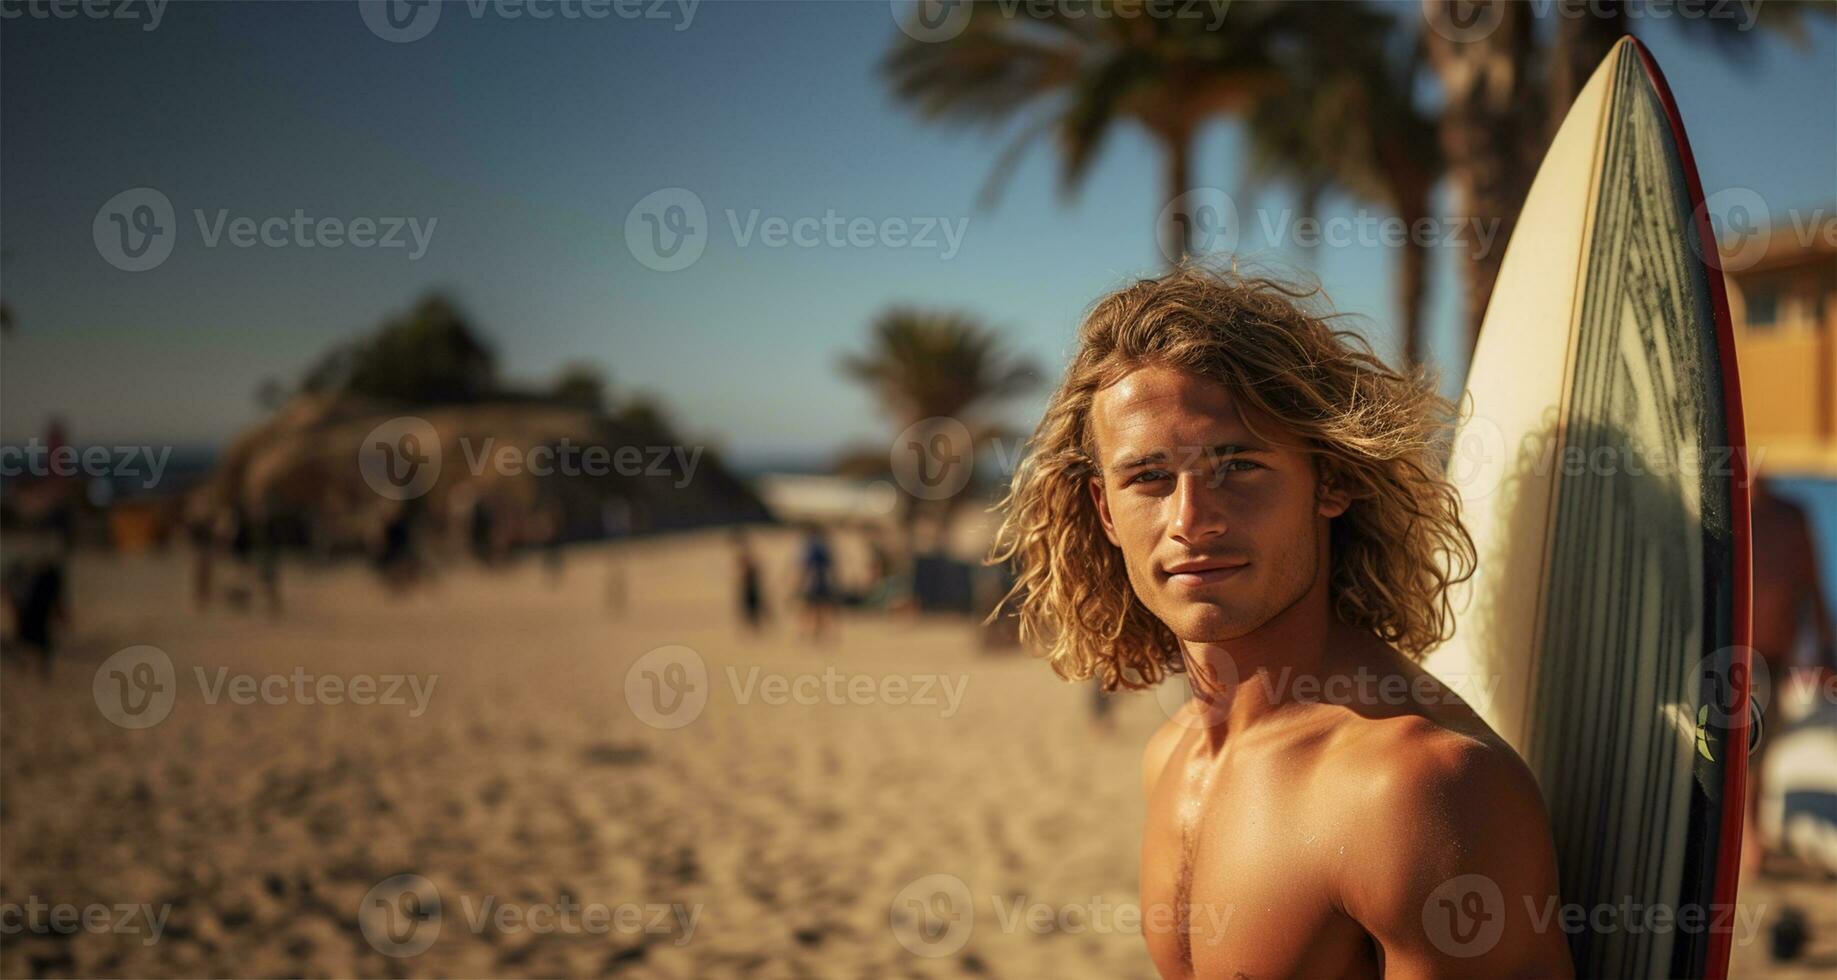 surfer poseren in voorkant van zijn busje met een surfboard in zijn handen in de buurt de strand. ai gegenereerd foto